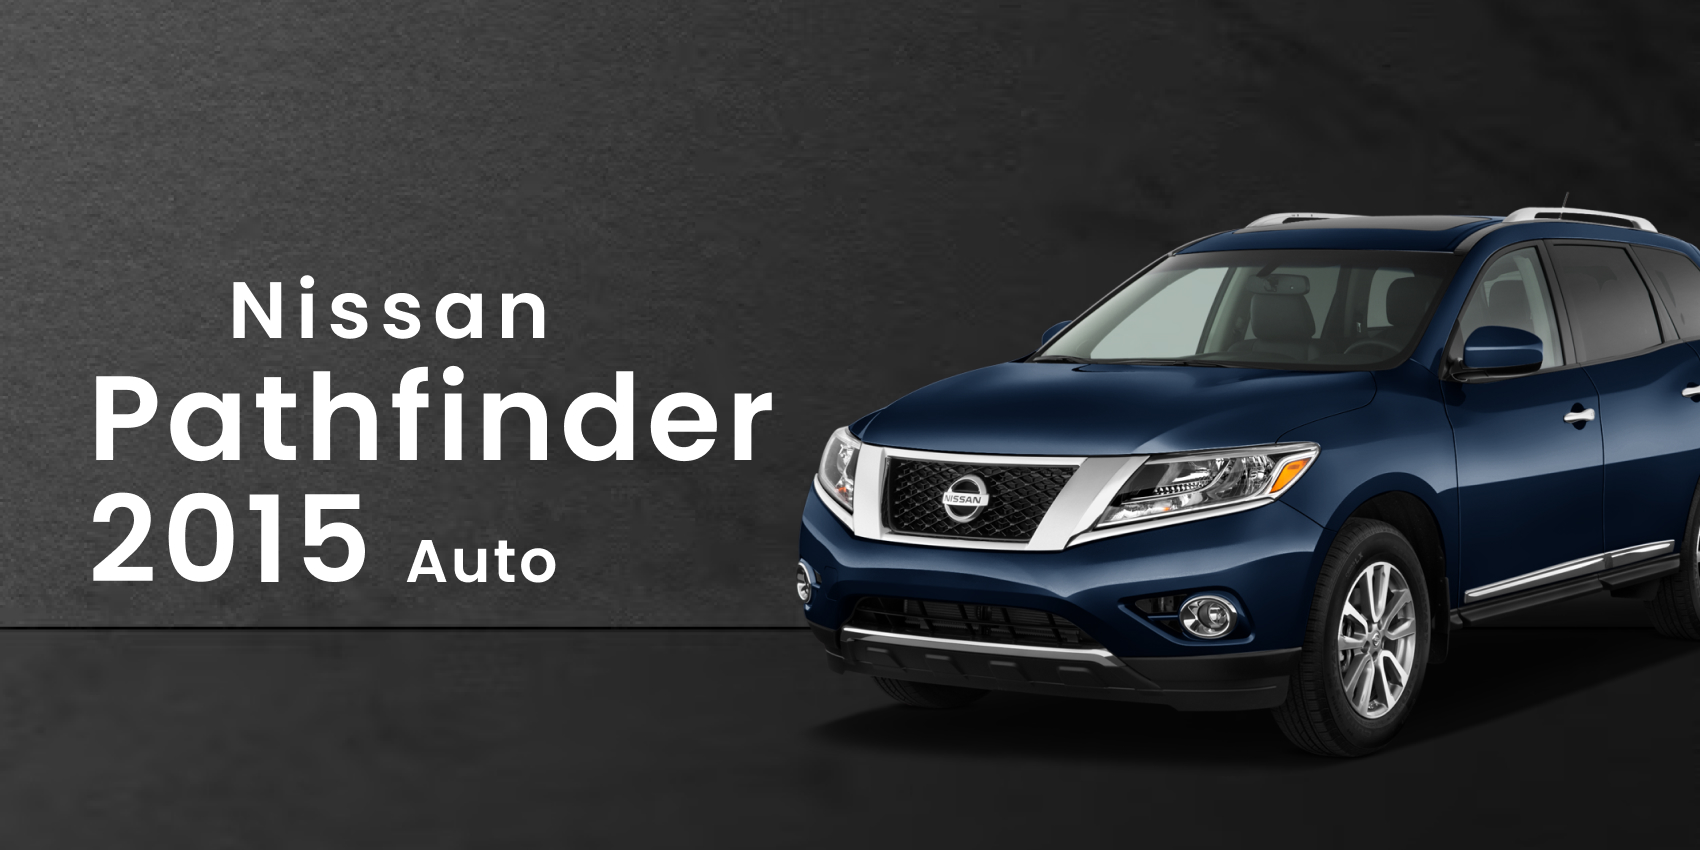 Nissan Pathfinder 2015 Auto